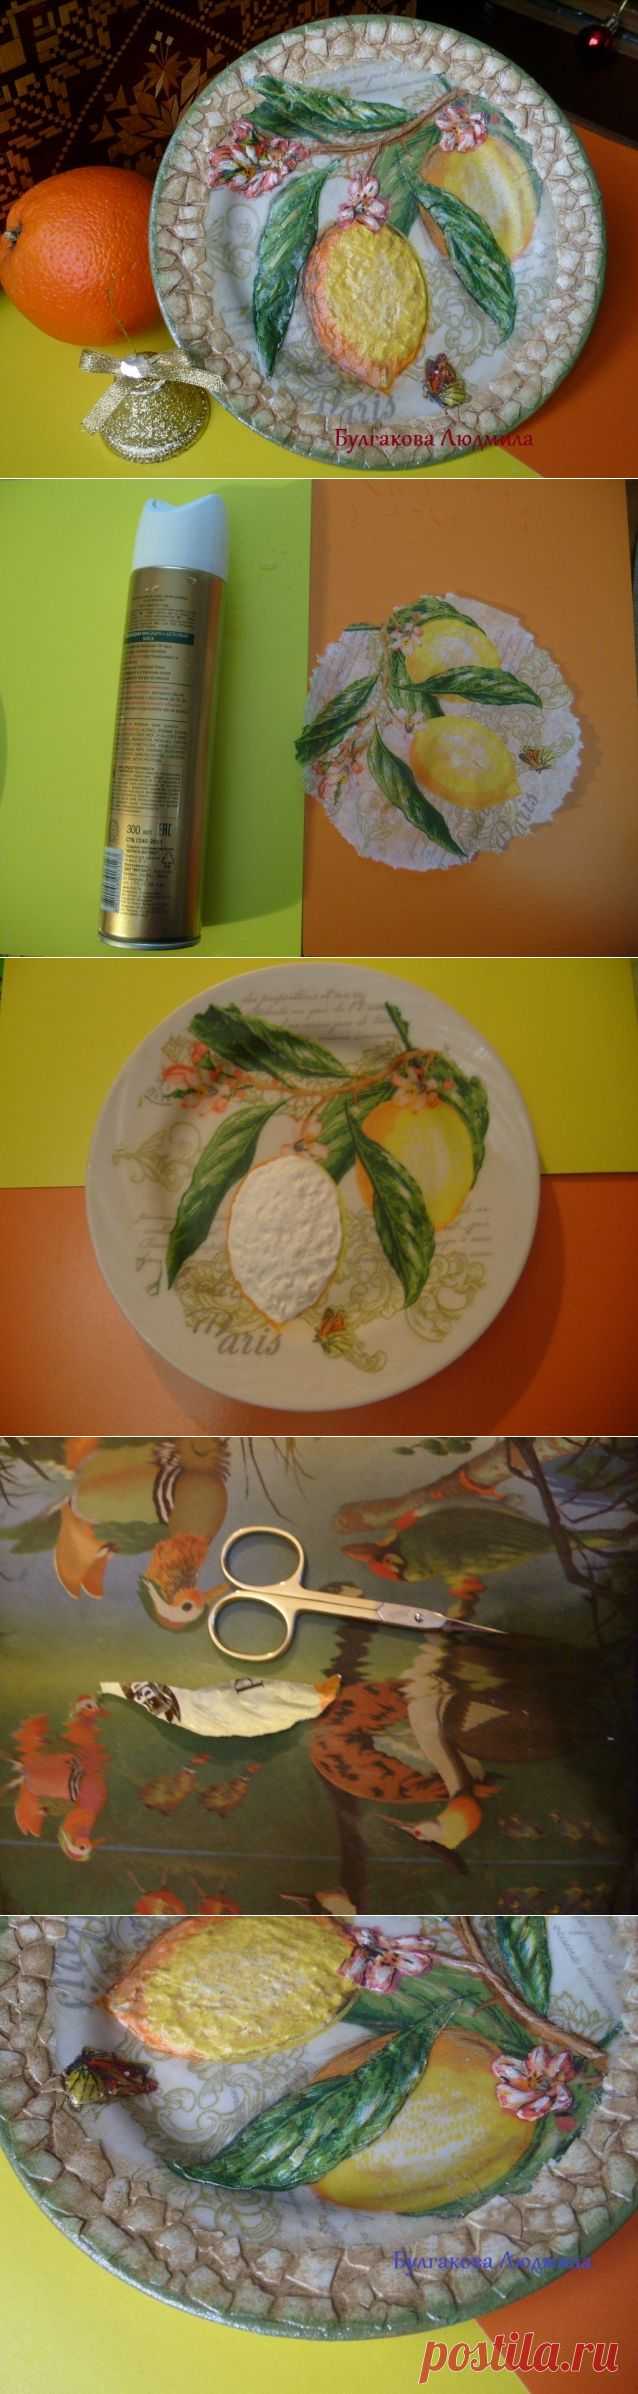 Декоративная тарелка с объёмным декупажем и яичным кракле. МК / Декупаж / Декупаж. Мастер-классы